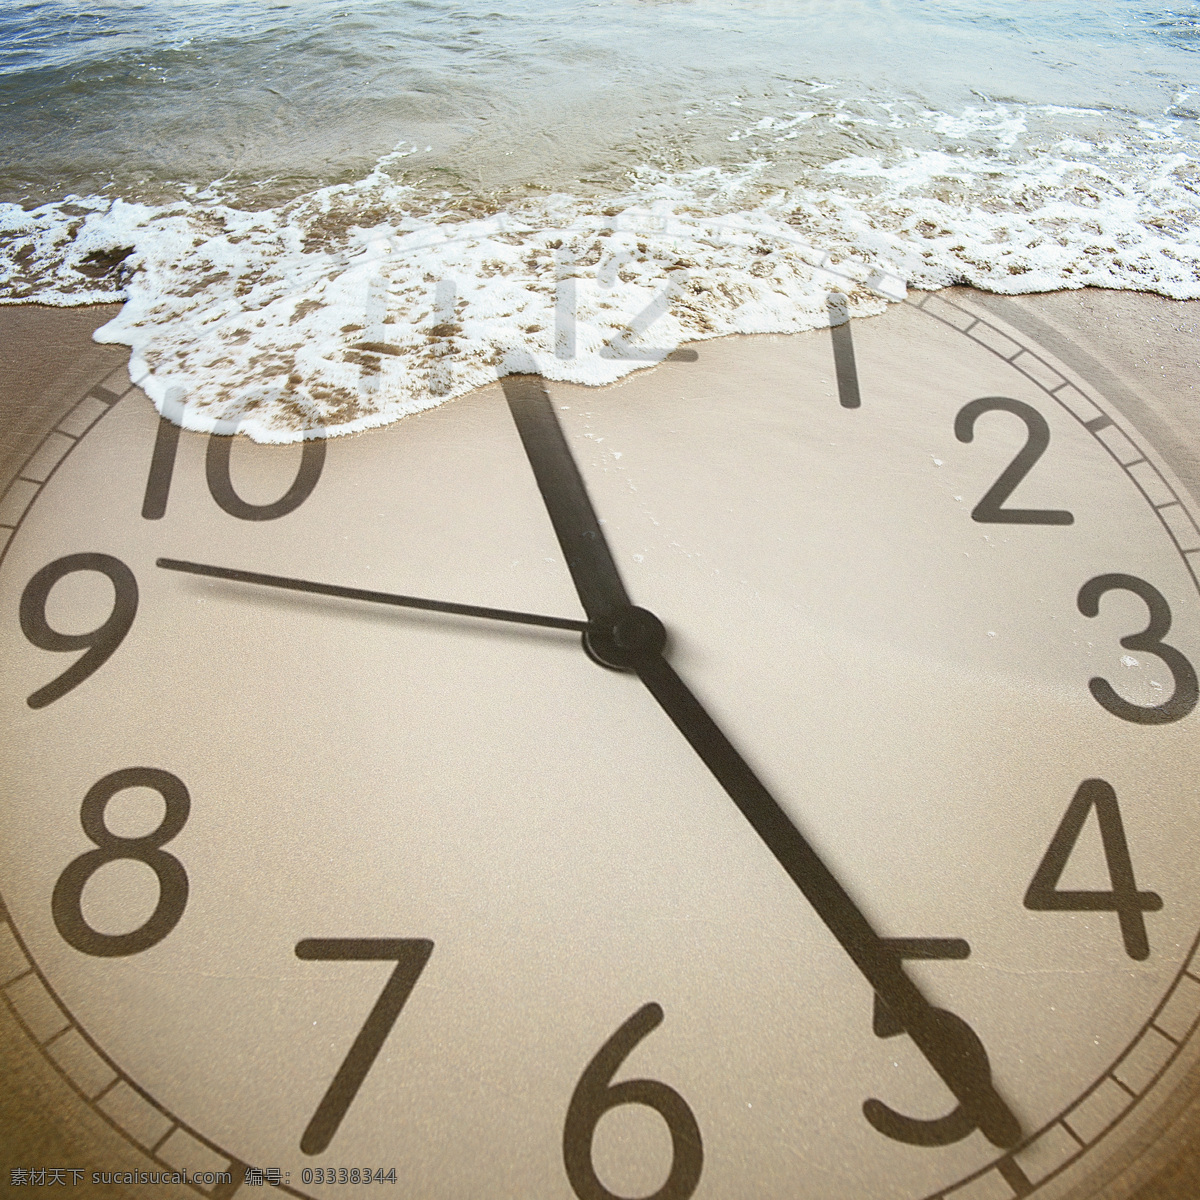 钟表 海水 钟 时间 海边 有趣的想法 创意 钟表与海水 其他类别 商务金融